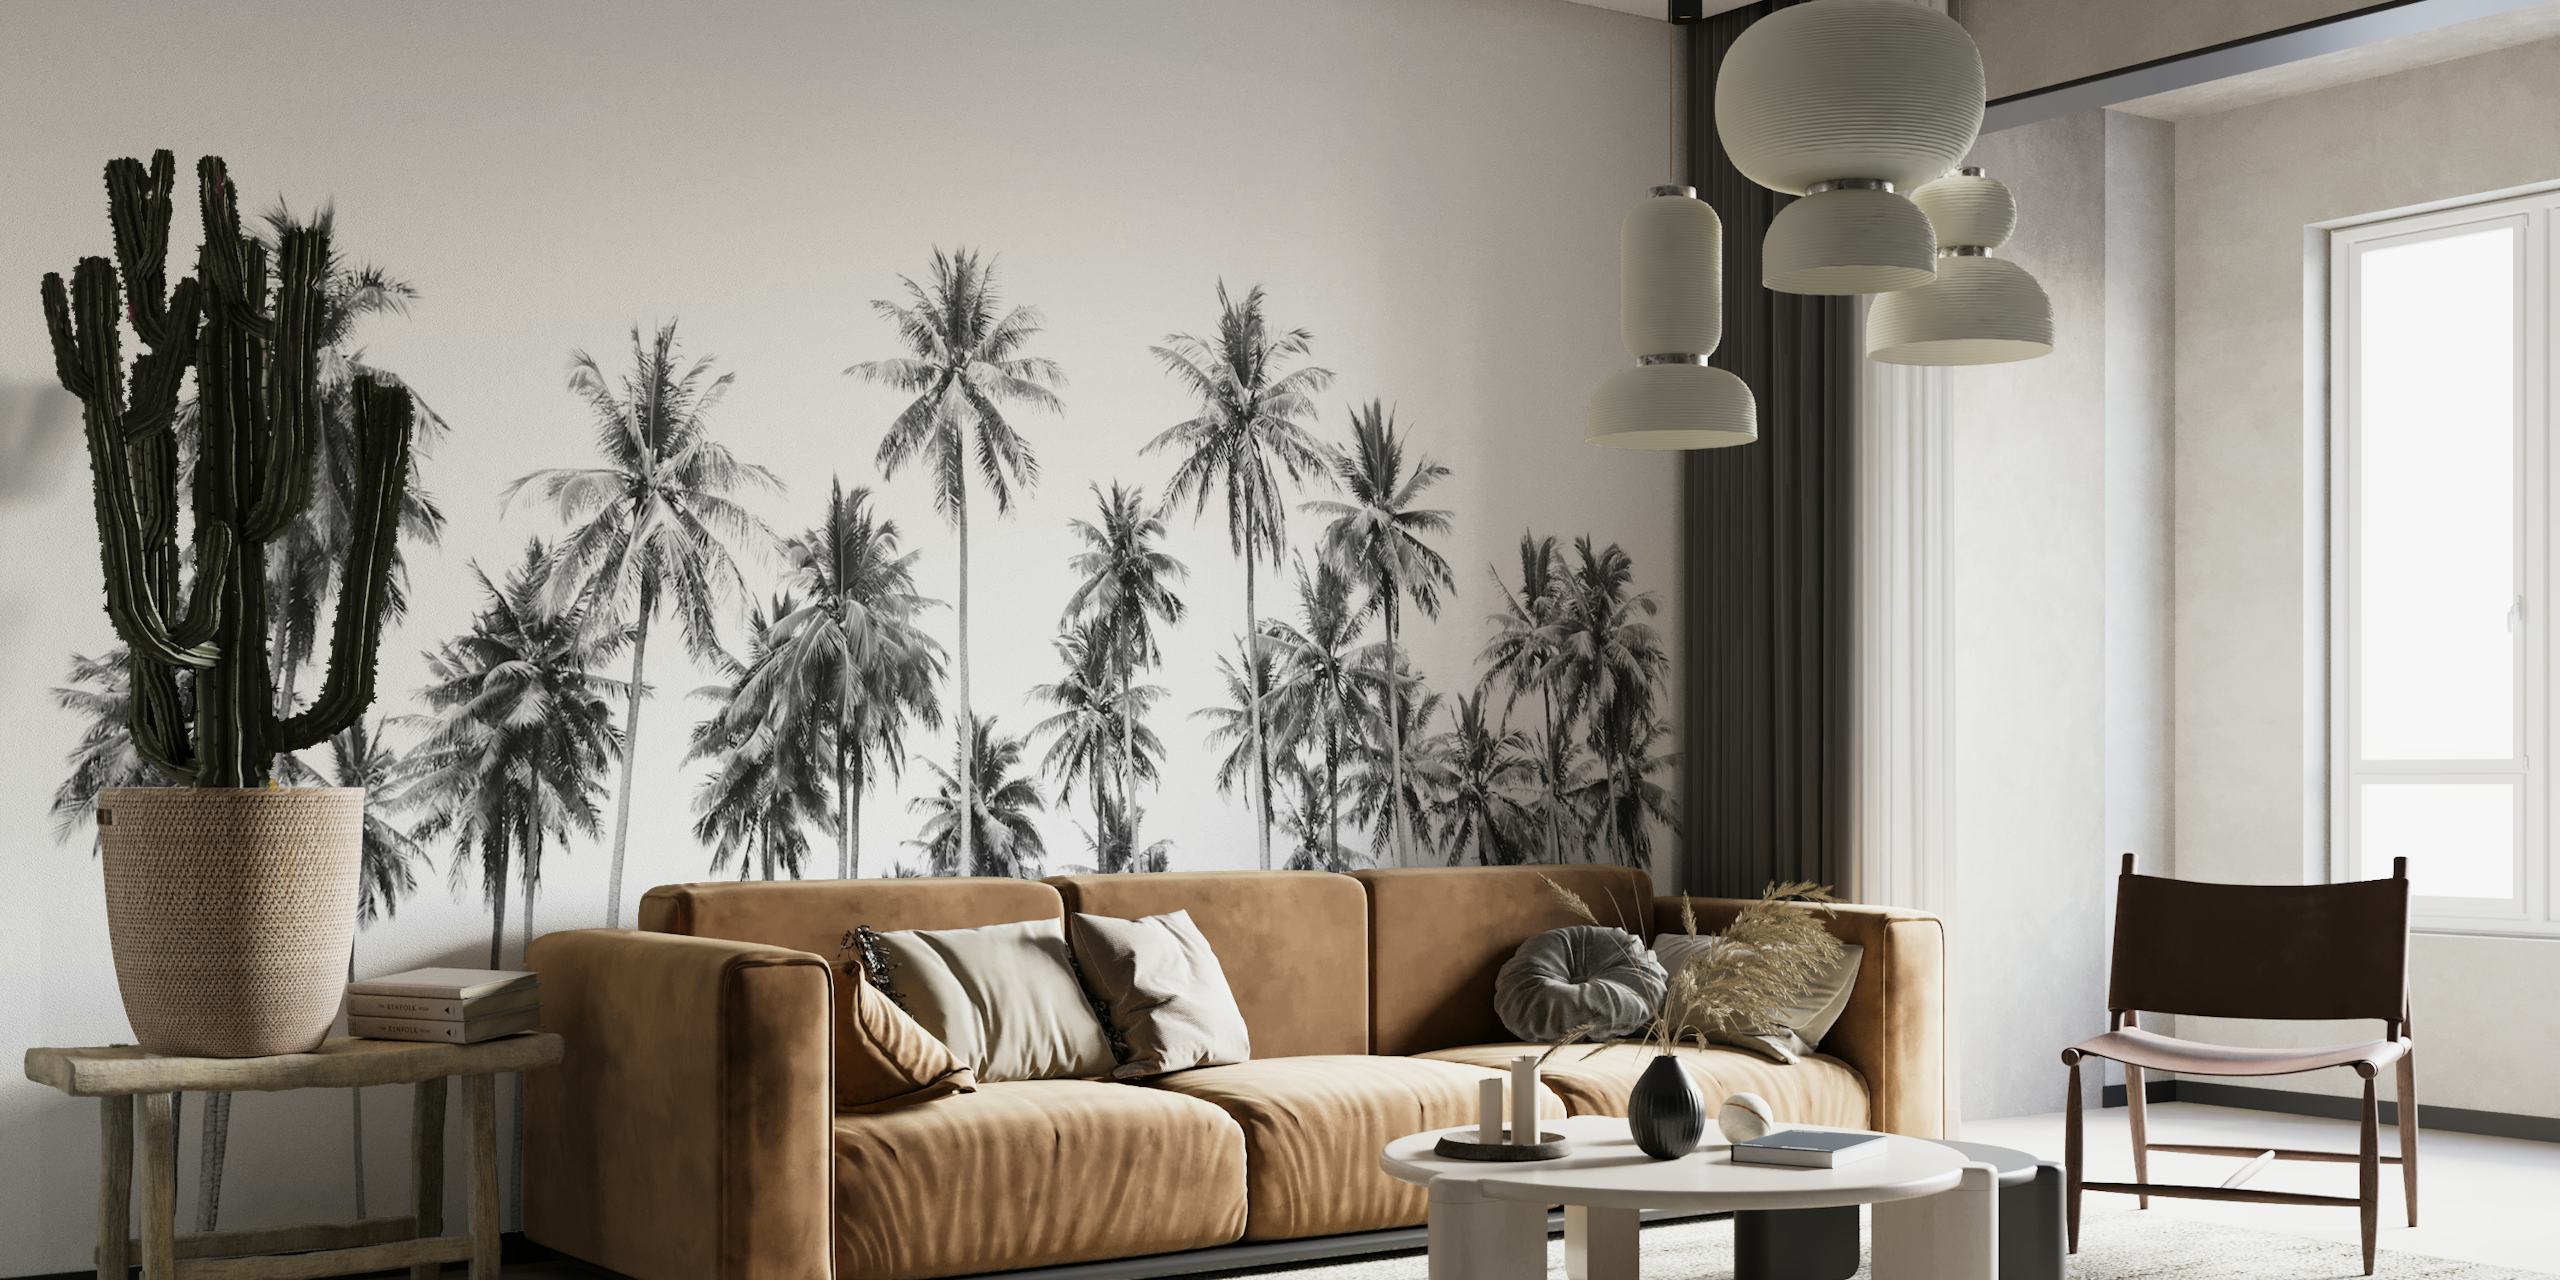 Crno-bijeli zidni mural s visokim palmama u okruženju džungle